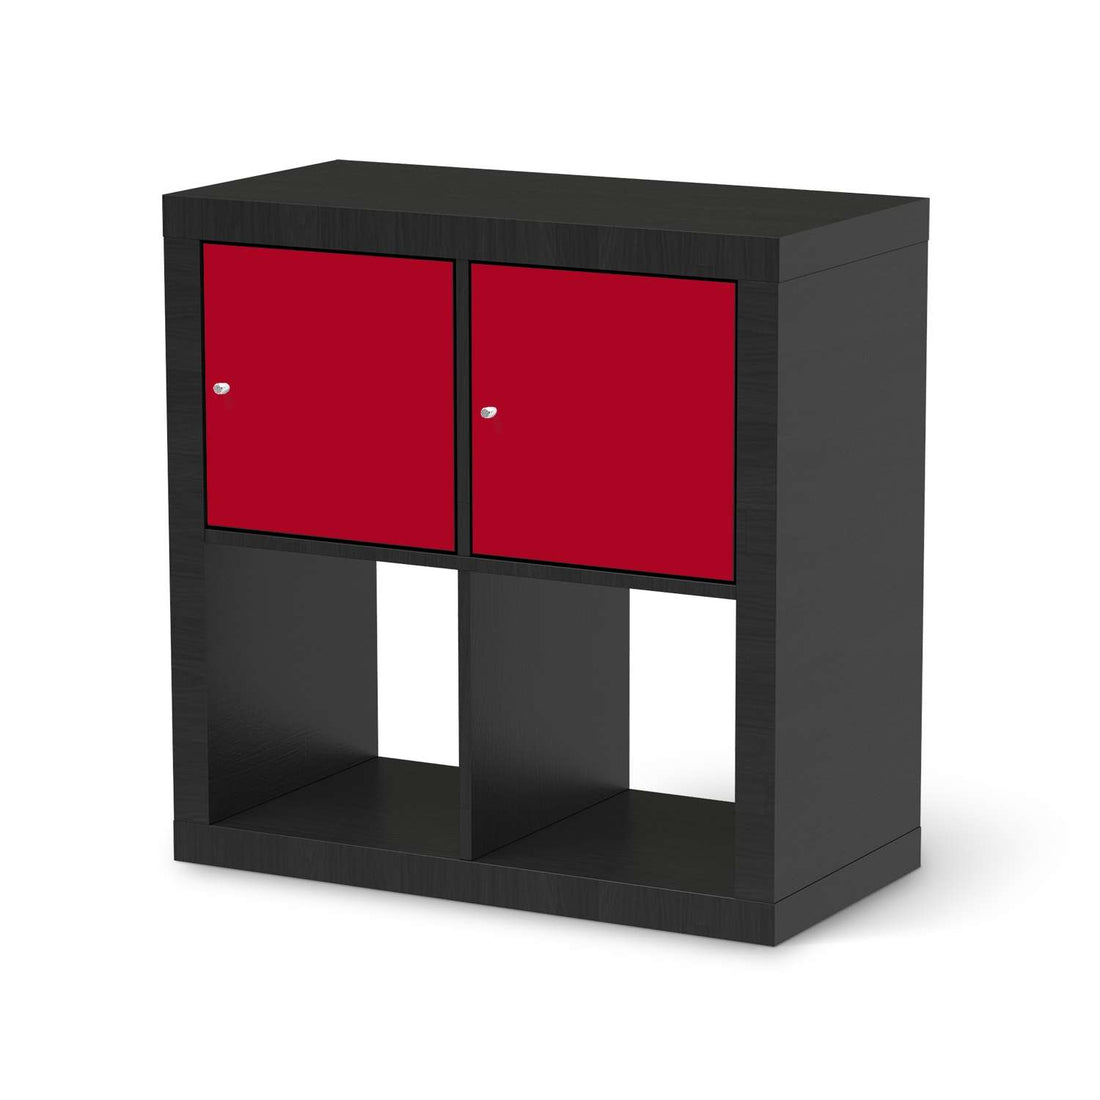 Möbel Klebefolie Rot Dark - IKEA Expedit Regal 2 Türen Quer - schwarz